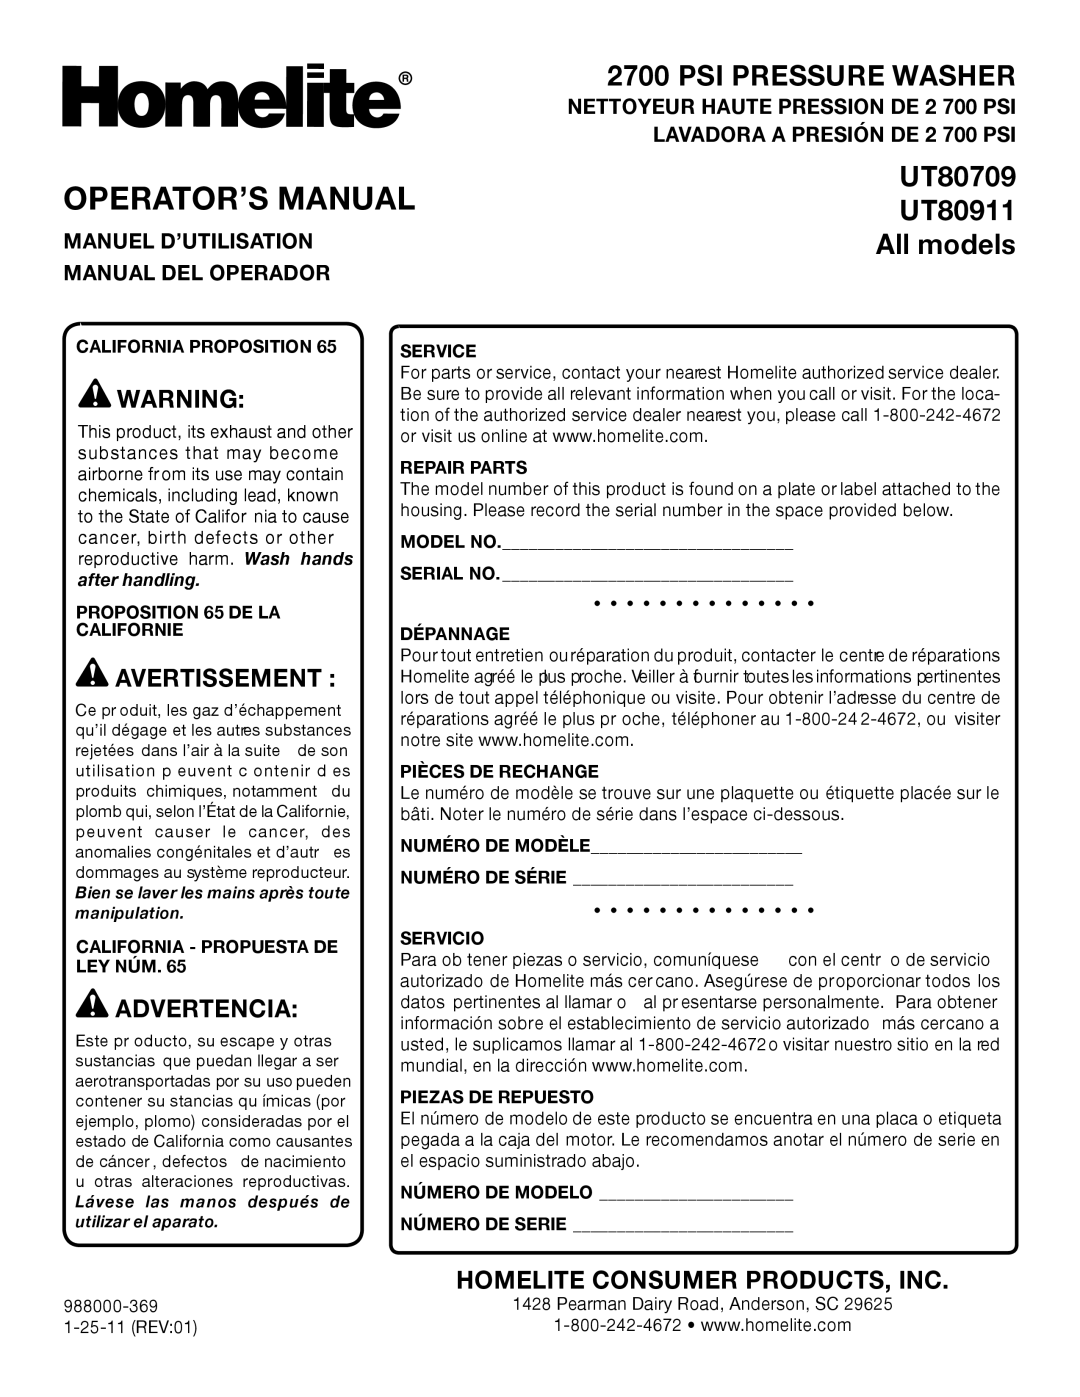 Homelite UT80911 Operator’S Manual, Psi Pressure Washer, UT80709, All models, Avertissement , Advertencia, after handling 